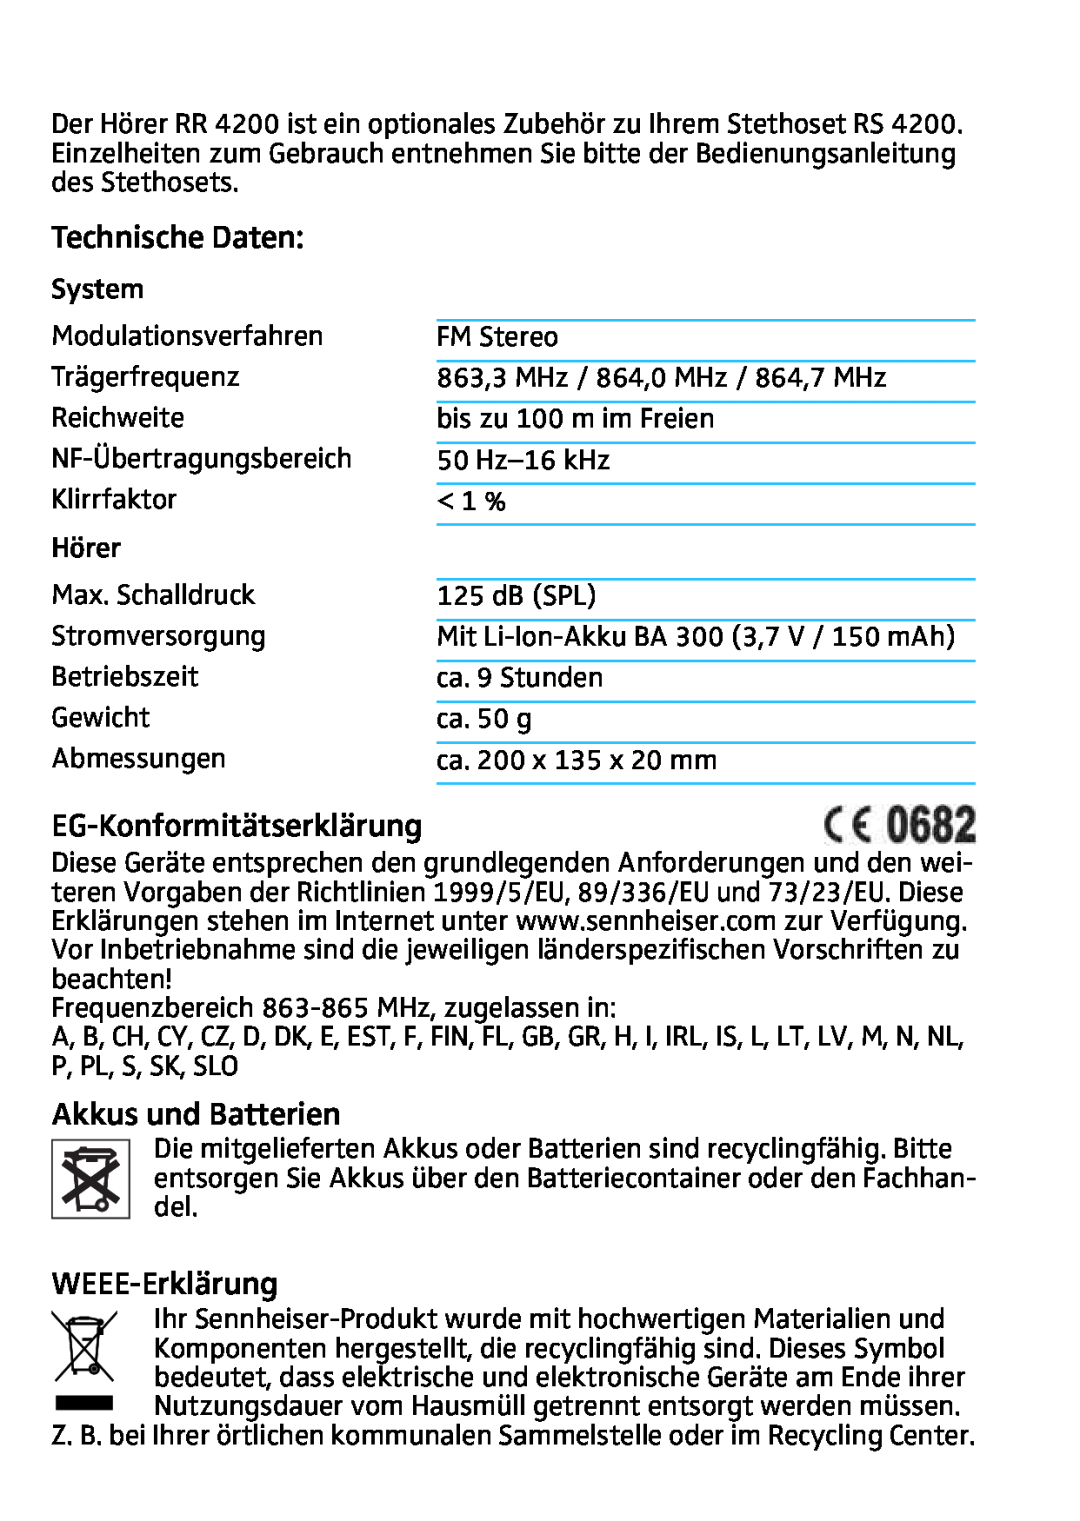 Sennheiser RR4200 manual Technische Daten, EG-Konformitätserklärung, Akkus und Batterien, WEEE-Erklärung 